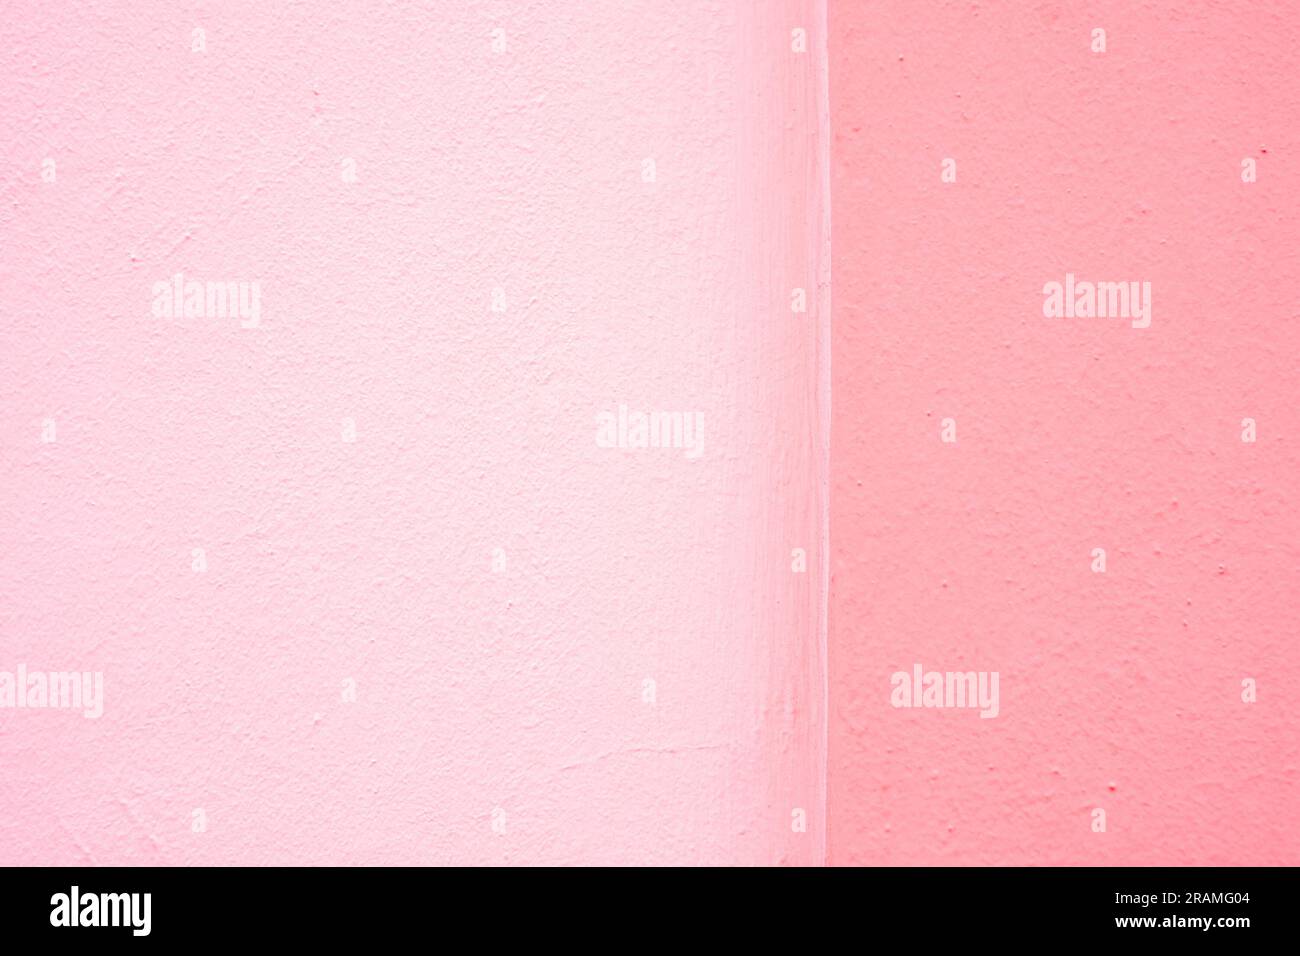 Zwei Farbtöne mit pinkfarbenem Muster, Offset, Design für Hintergründe und Hintergründe. Stockfoto